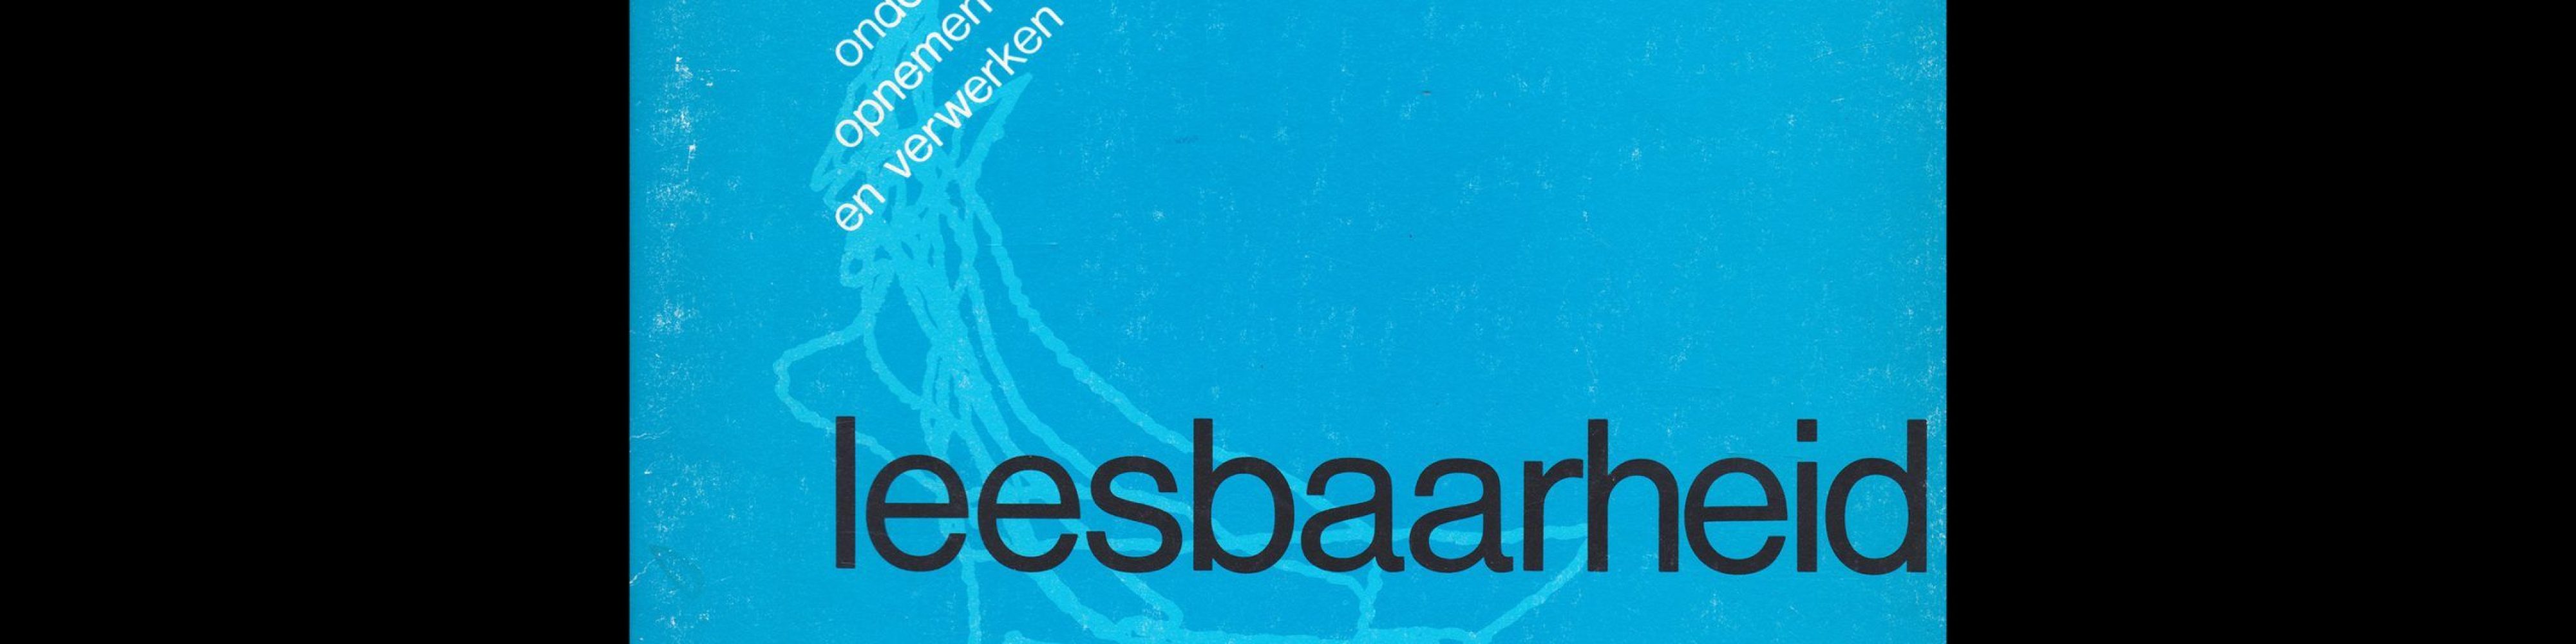 Leesbaarheid : onderscheiden, opnemen en verwerken, Lecturis, 1976 designed by Wim Crouwel